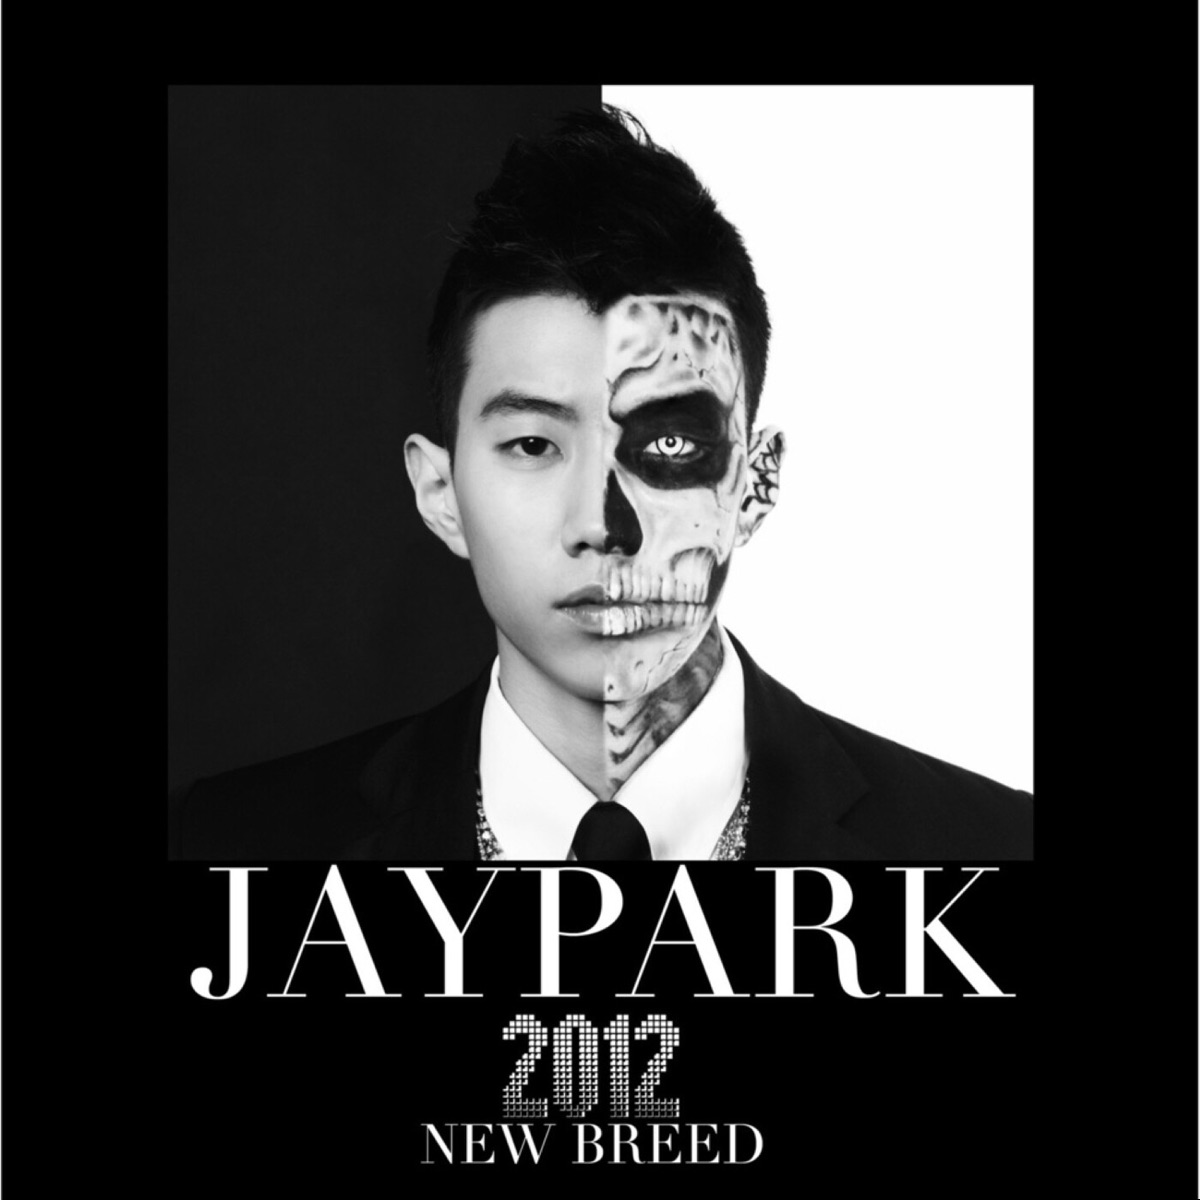 Jay Park – New Breed